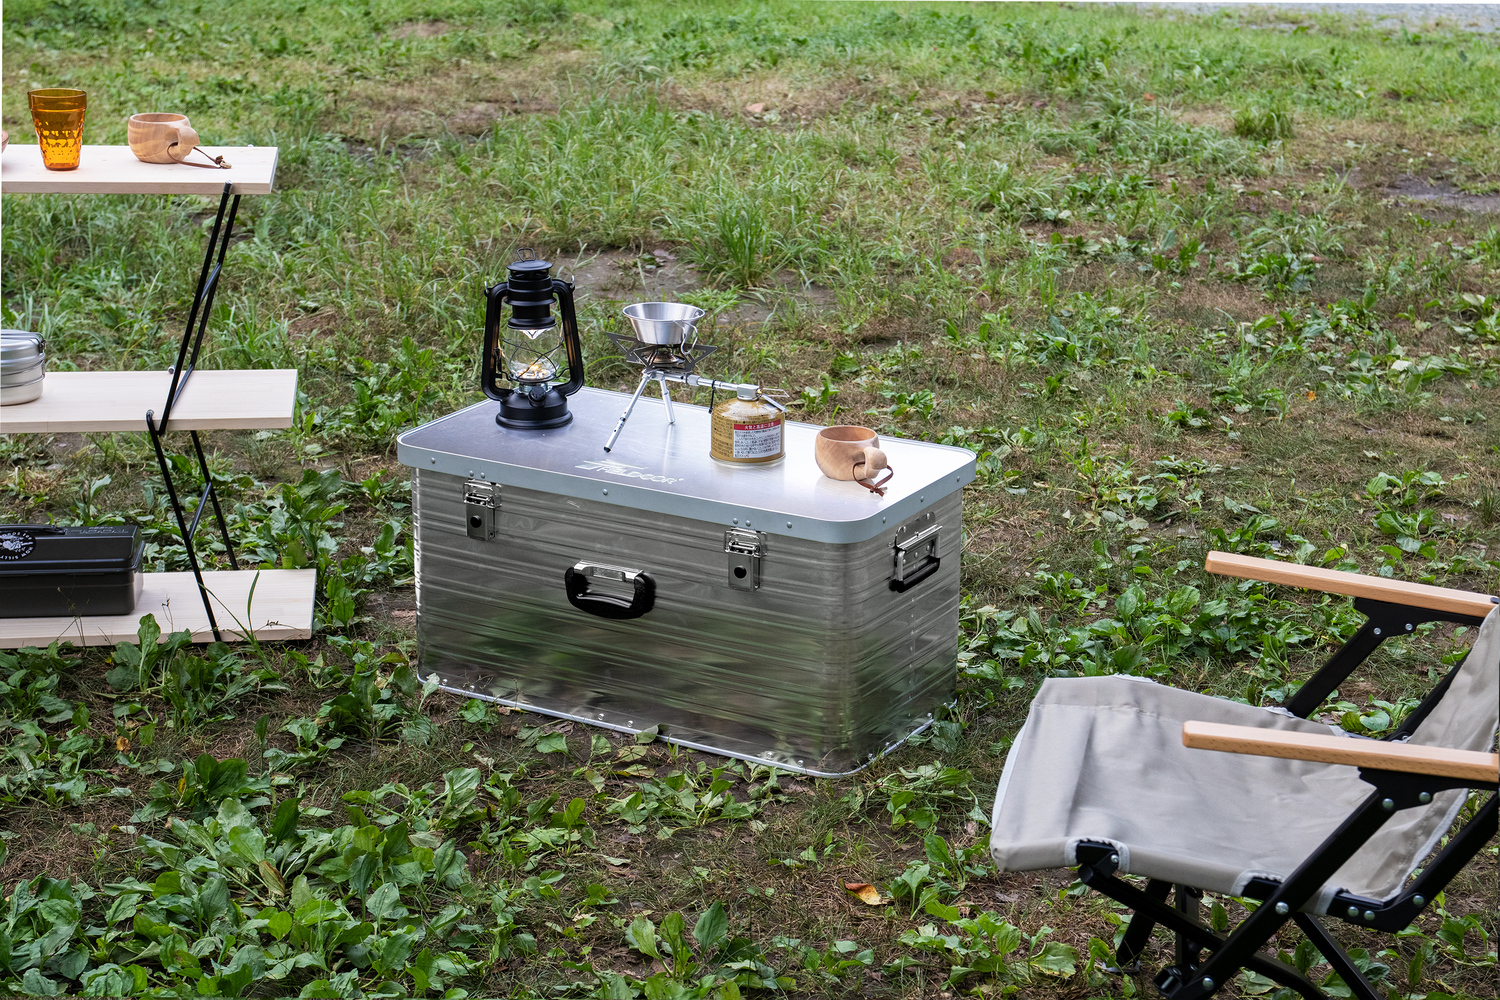 キャンプ用ツールボックスの上にランタン、バーナーなどのキャンプ道具